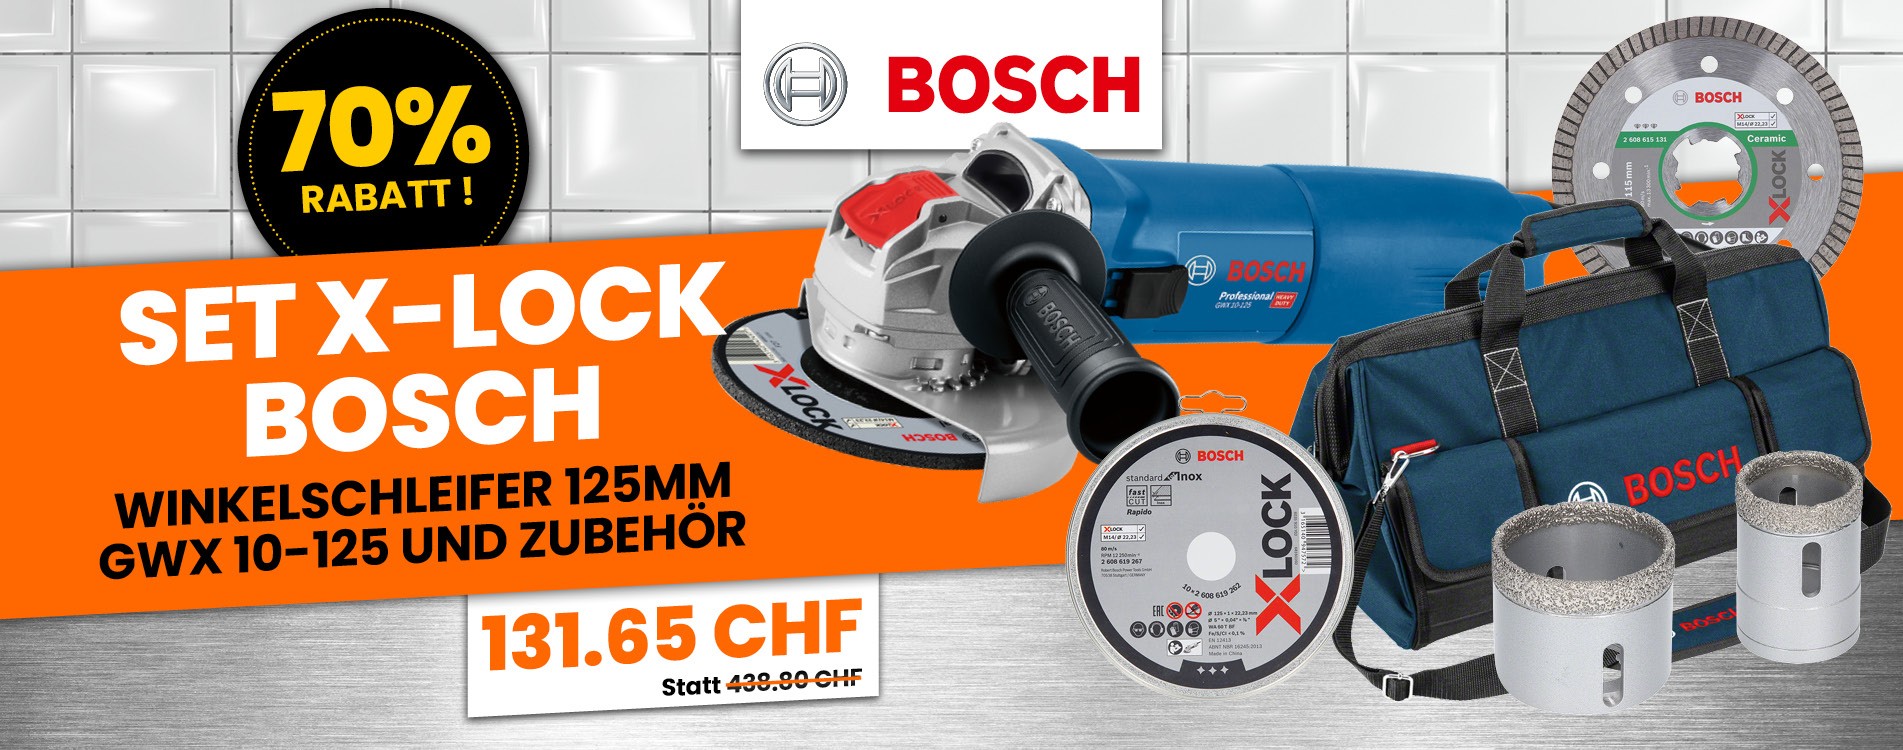 Bosch X-Lock Set Winkelschleifer 125mm GWX 10-125 Und Zubehör